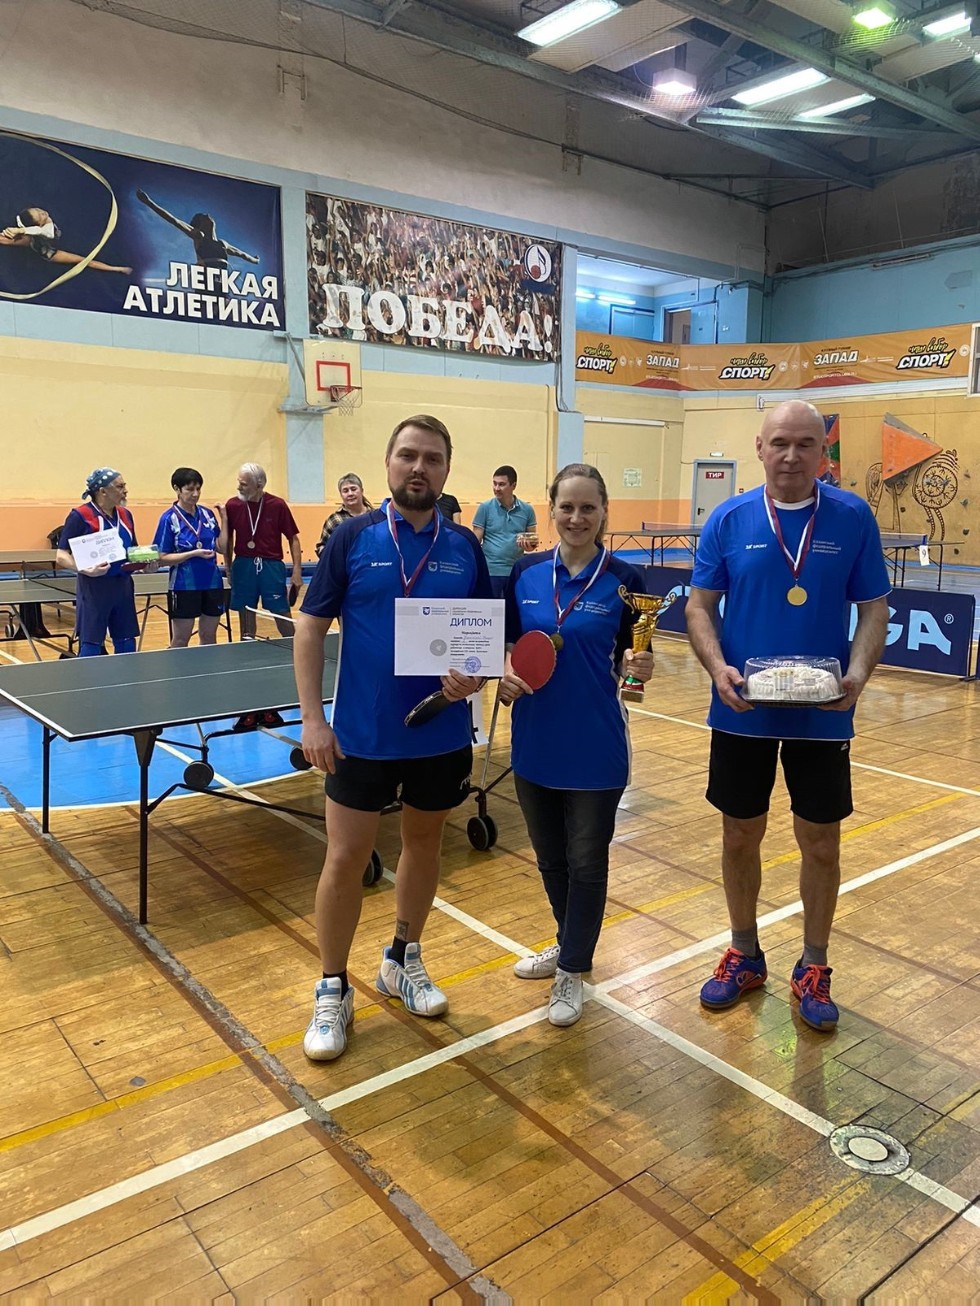 Поздравляем команду преподавателей и ветеранов Юрфака с победой в турнире по настольному теннису